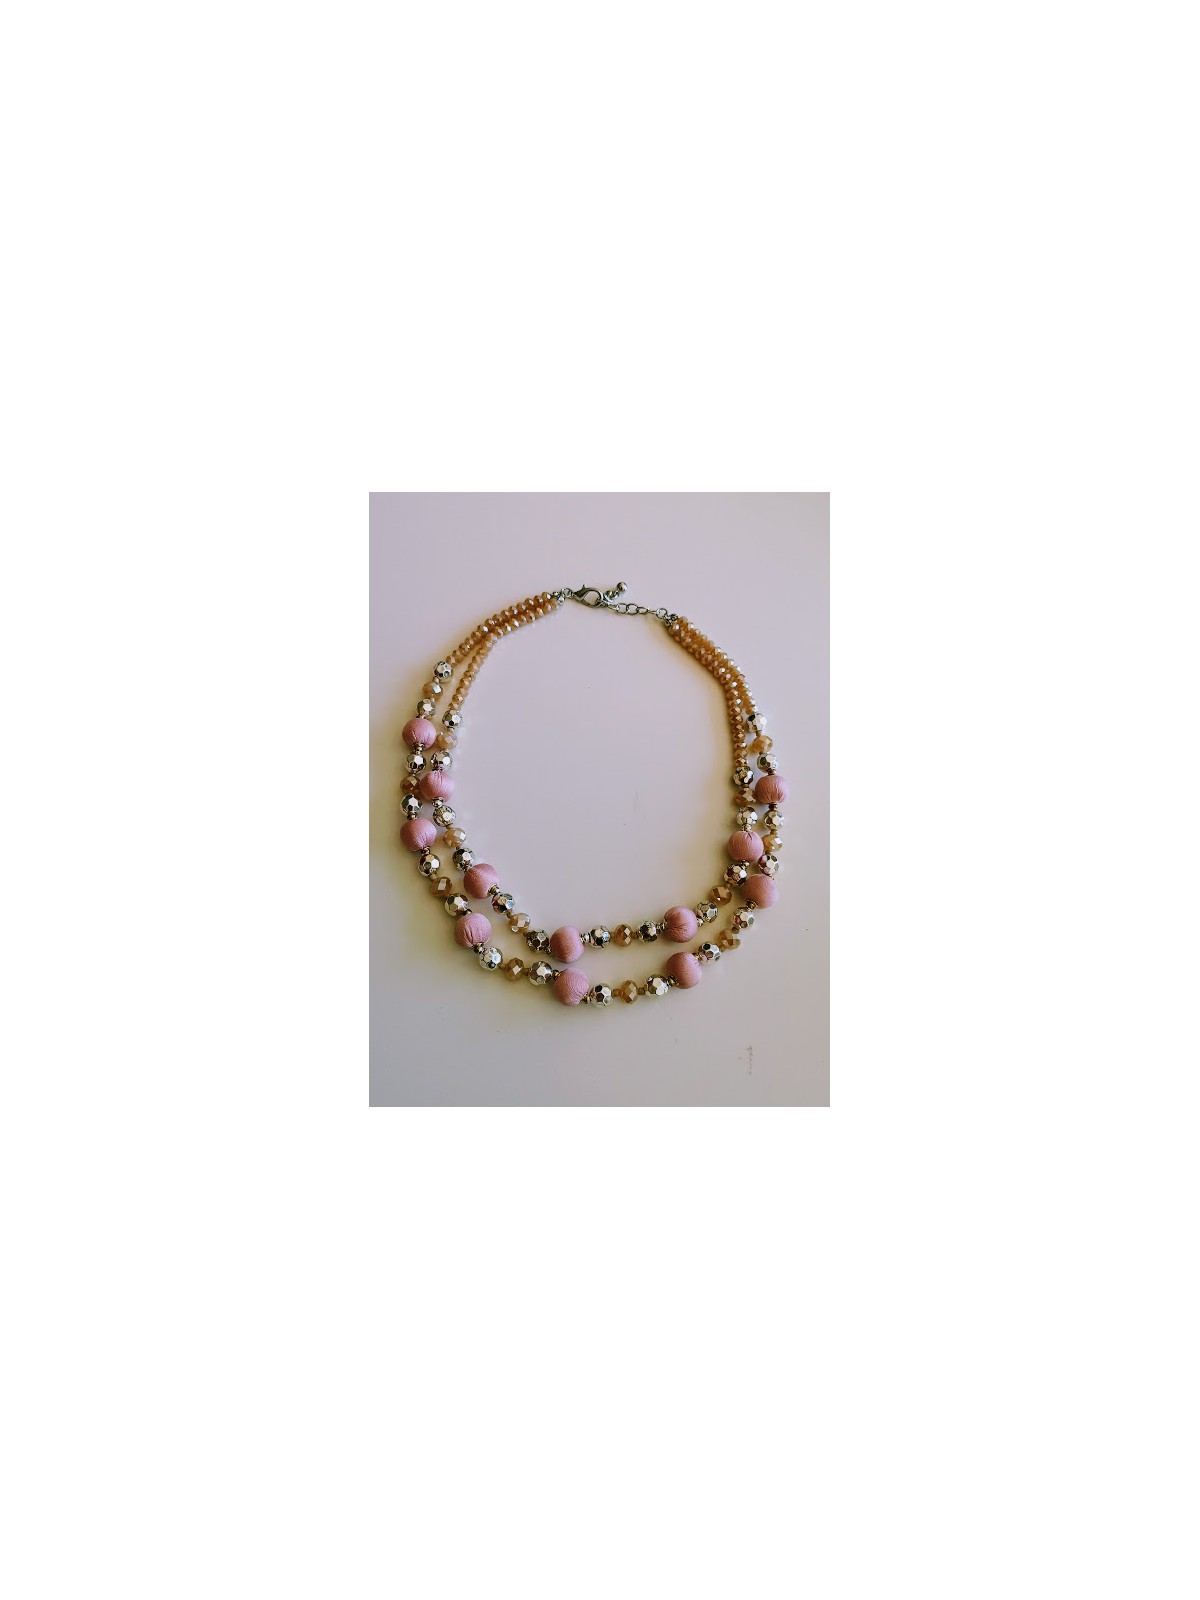 Colliers de perles rose poudré pêche et argent | 2 vue à plat | Tilleulmenthe boutique de mode femme en ligne